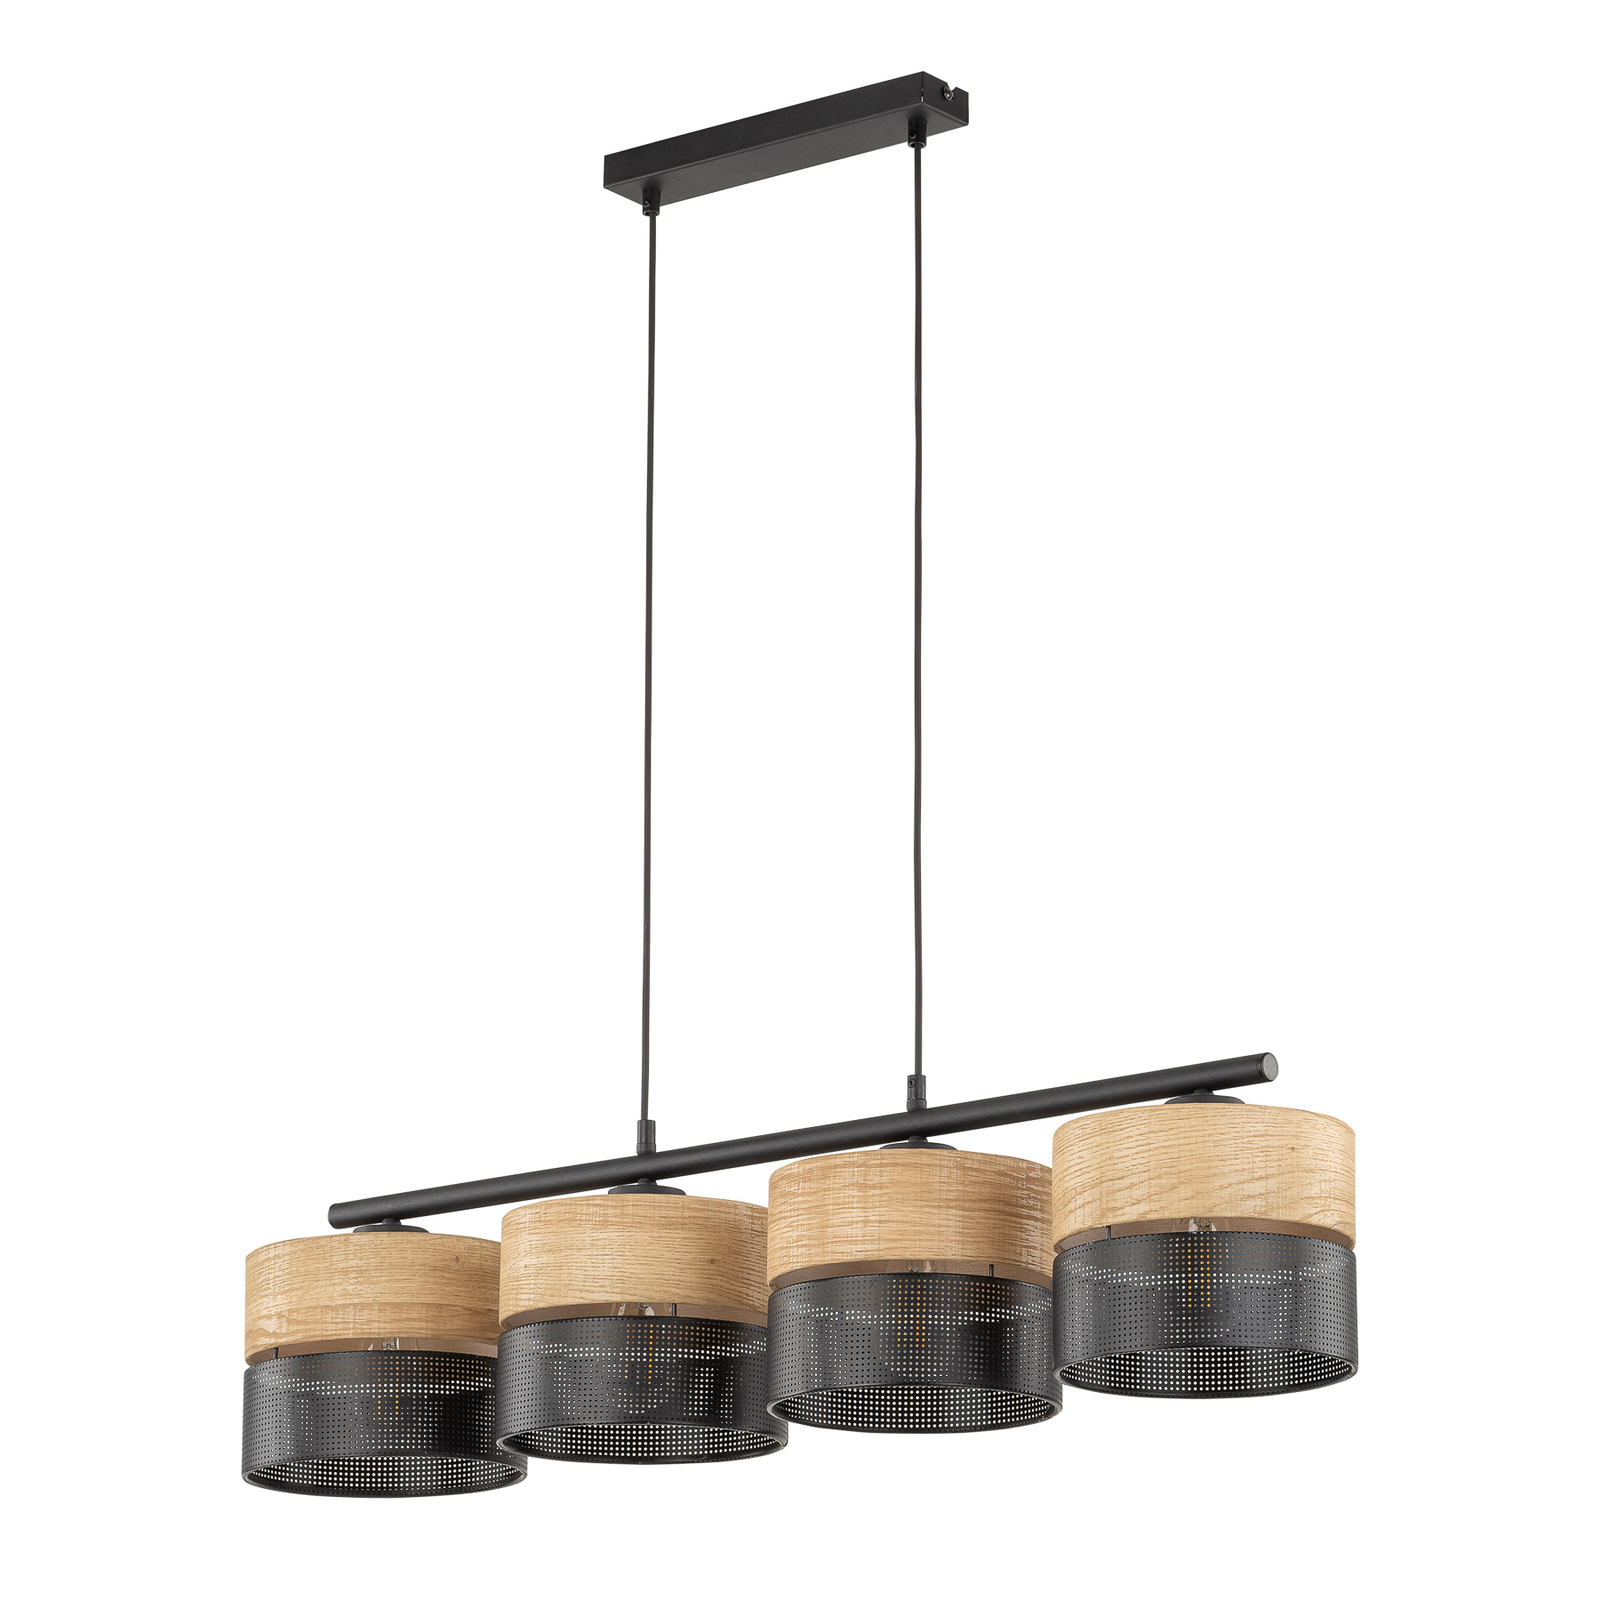 Nicol hanglamp, zwart/hout-effect, 94x20 cm 4-lamps 4 x E27